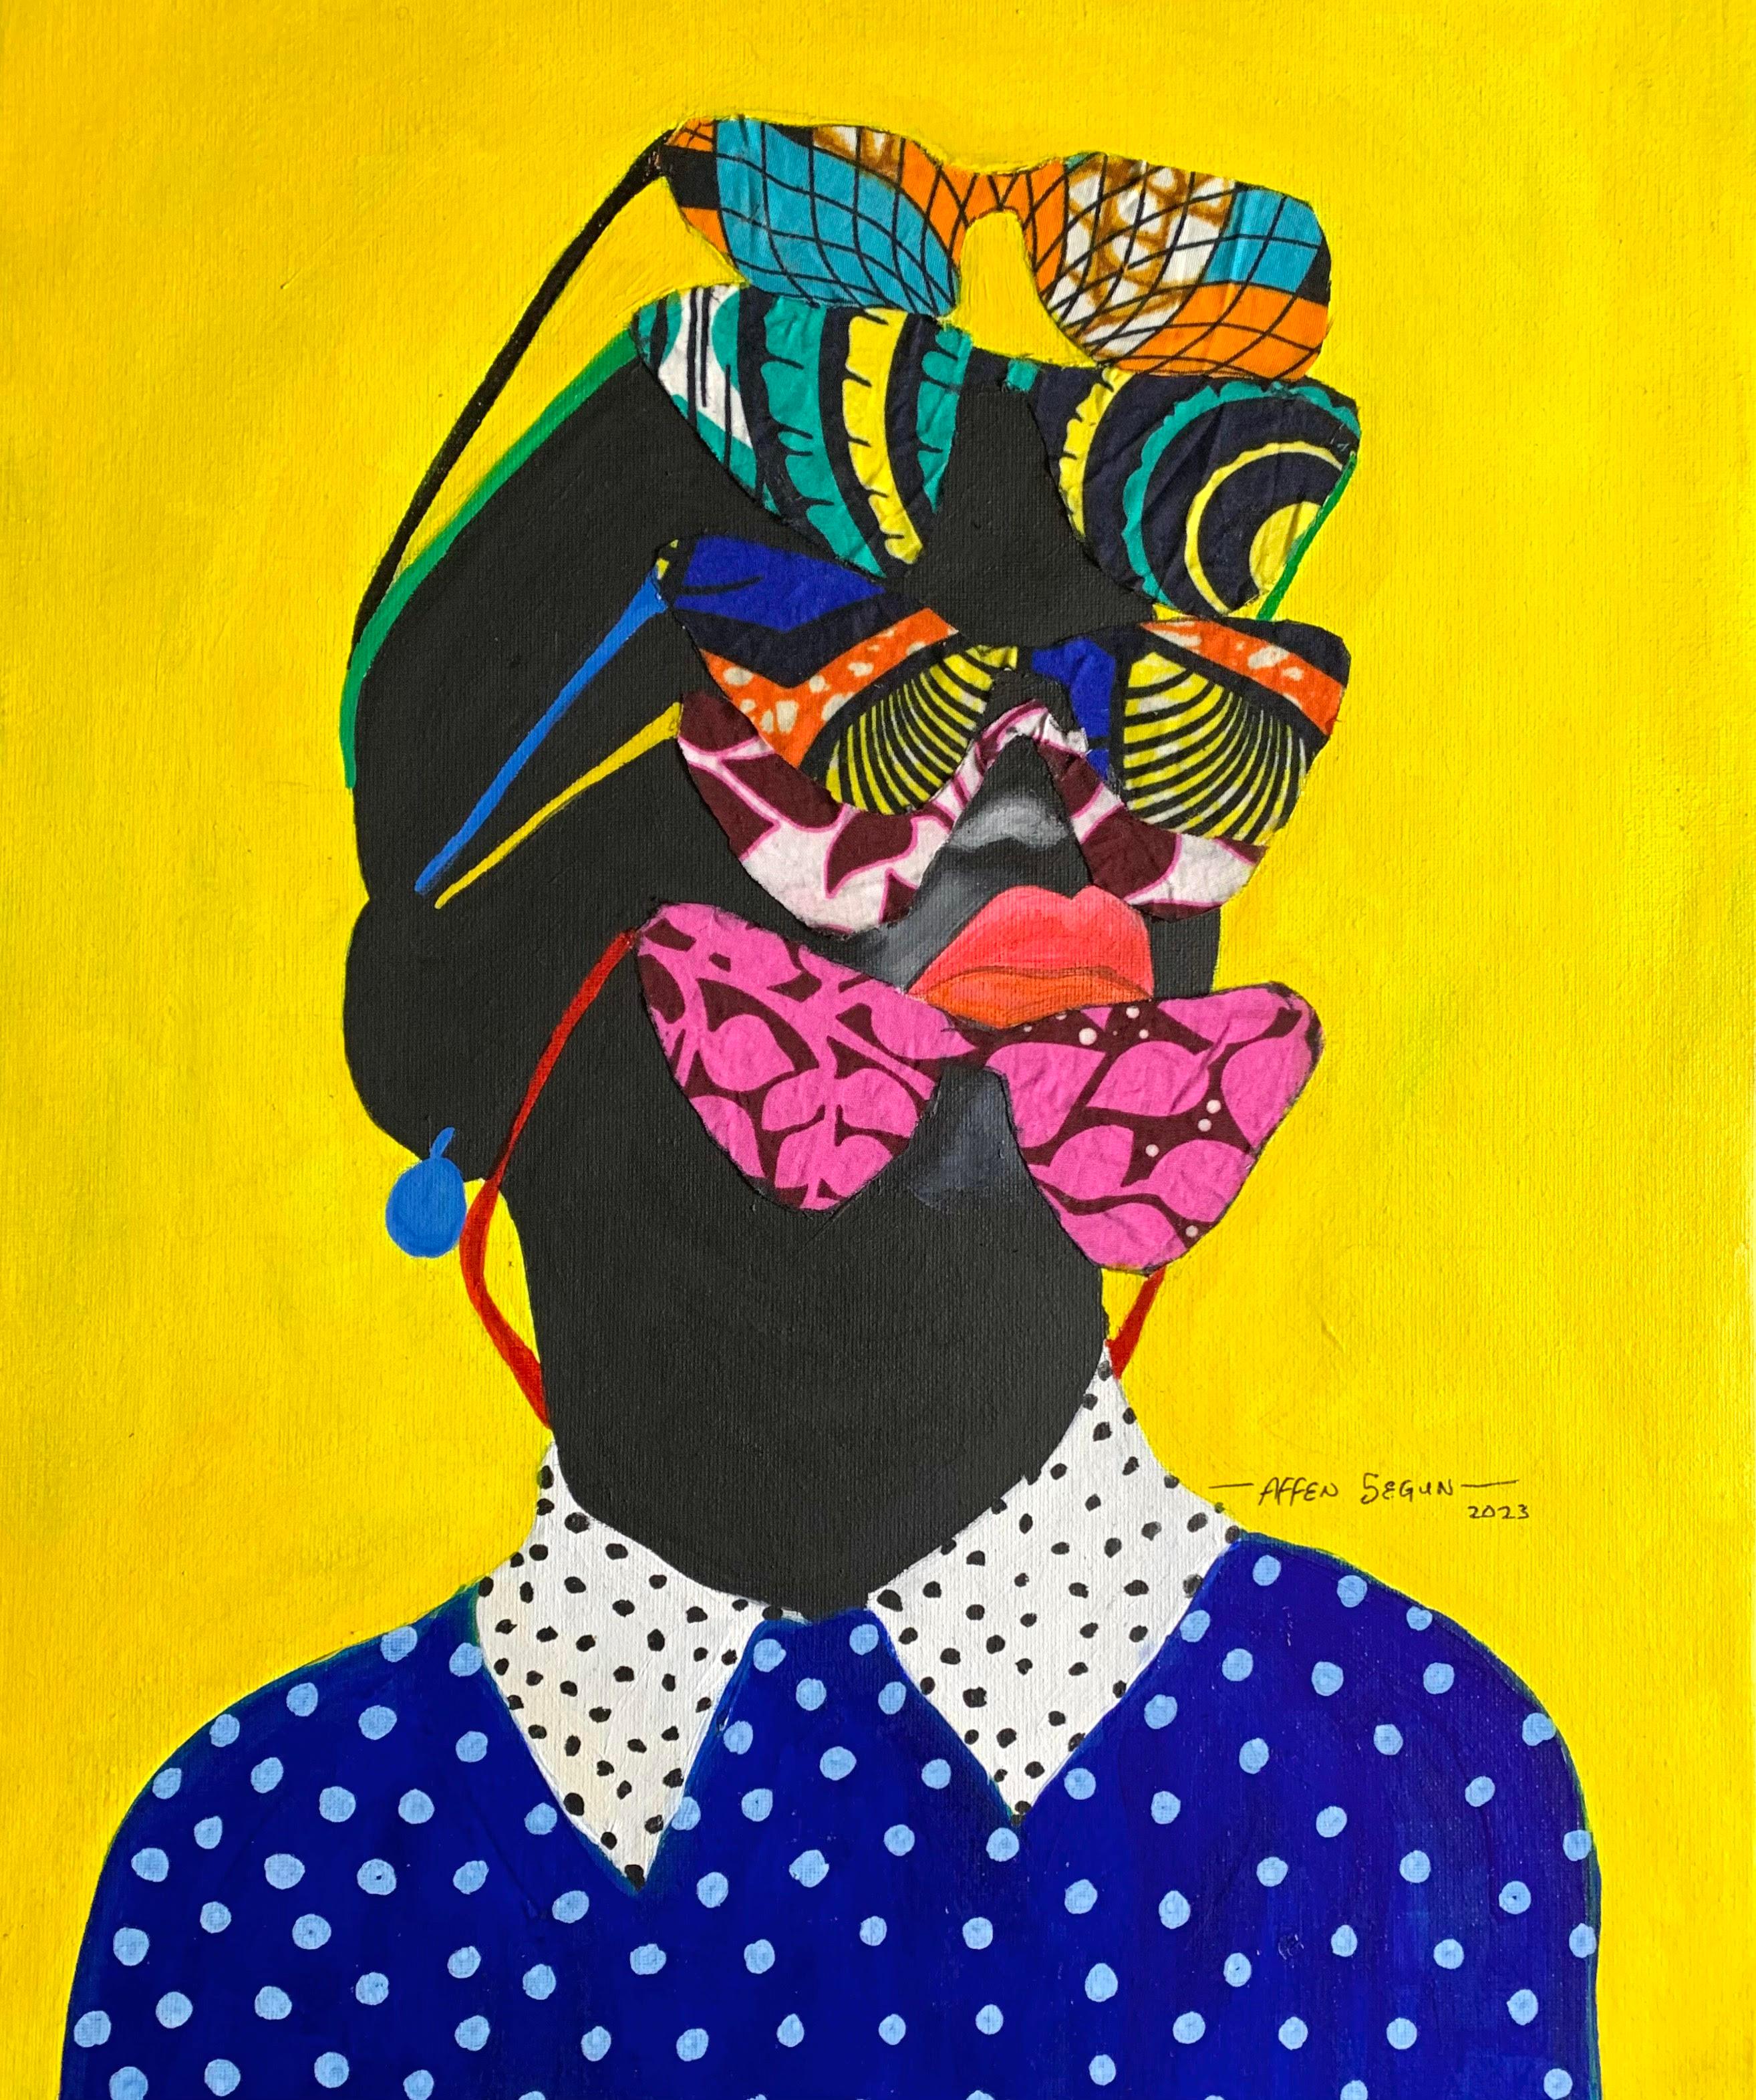 Figurative Painting Affen Segun - "Tell Me What You See" Peinture acrylique d'une femme noire portant de nombreuses lunettes de soleil. 